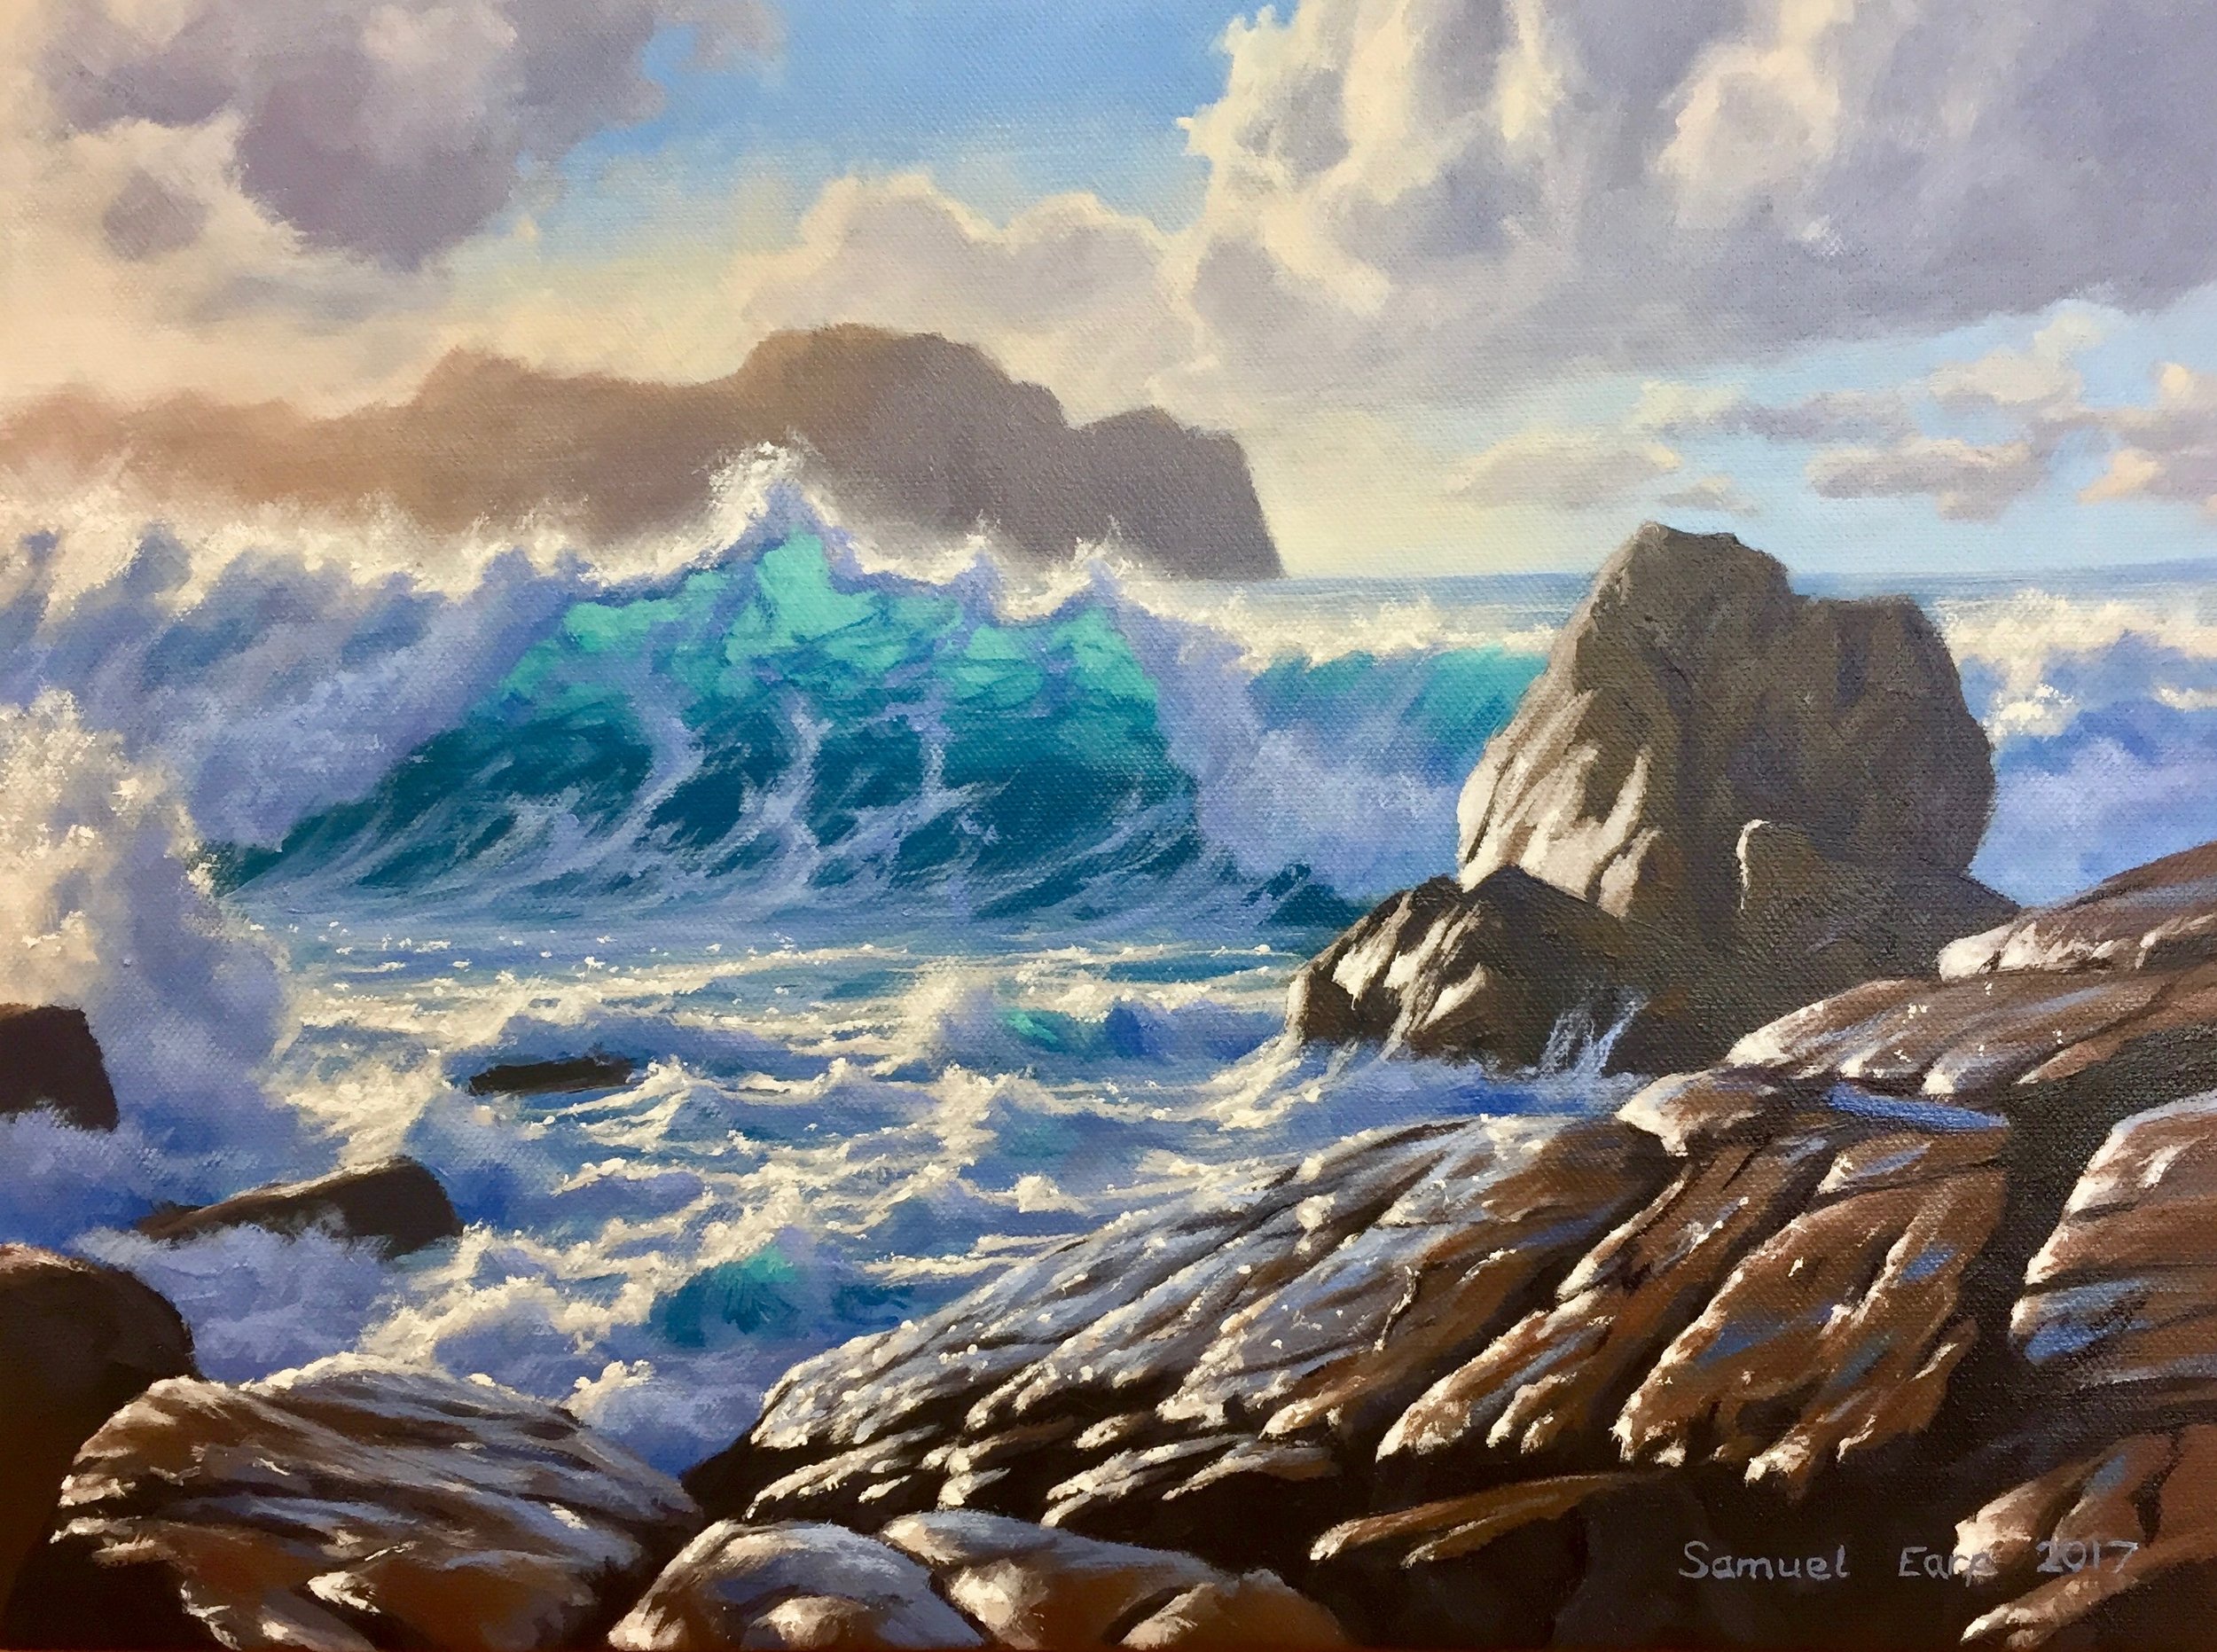 Port Soif Guernsey - Samuel Earp - Seascape - oil painting.jpg